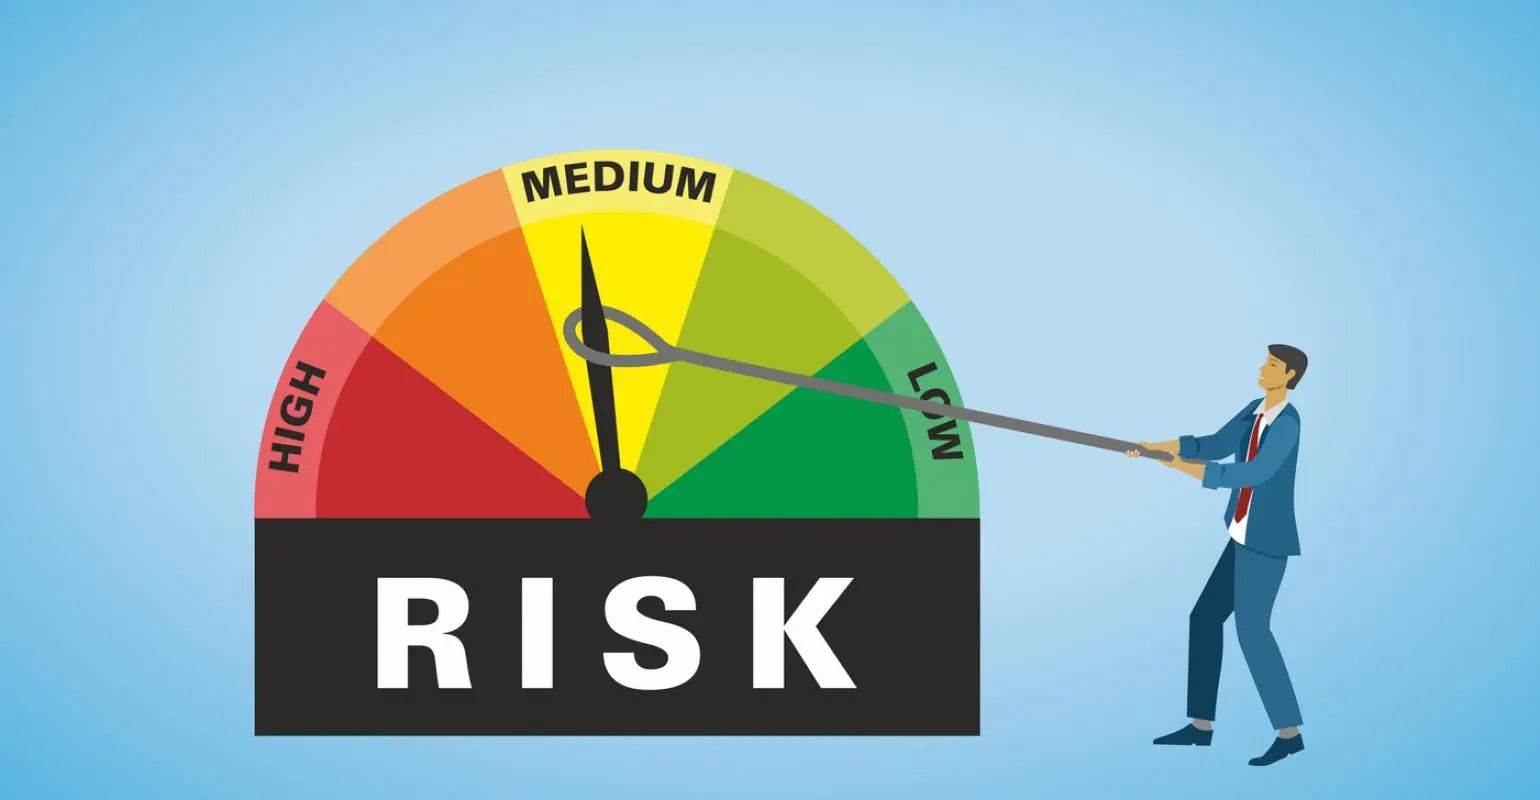 Quản trị rủi ro giúp doanh nghiệp có thể ứng phó với các rủi ro một cách chủ động